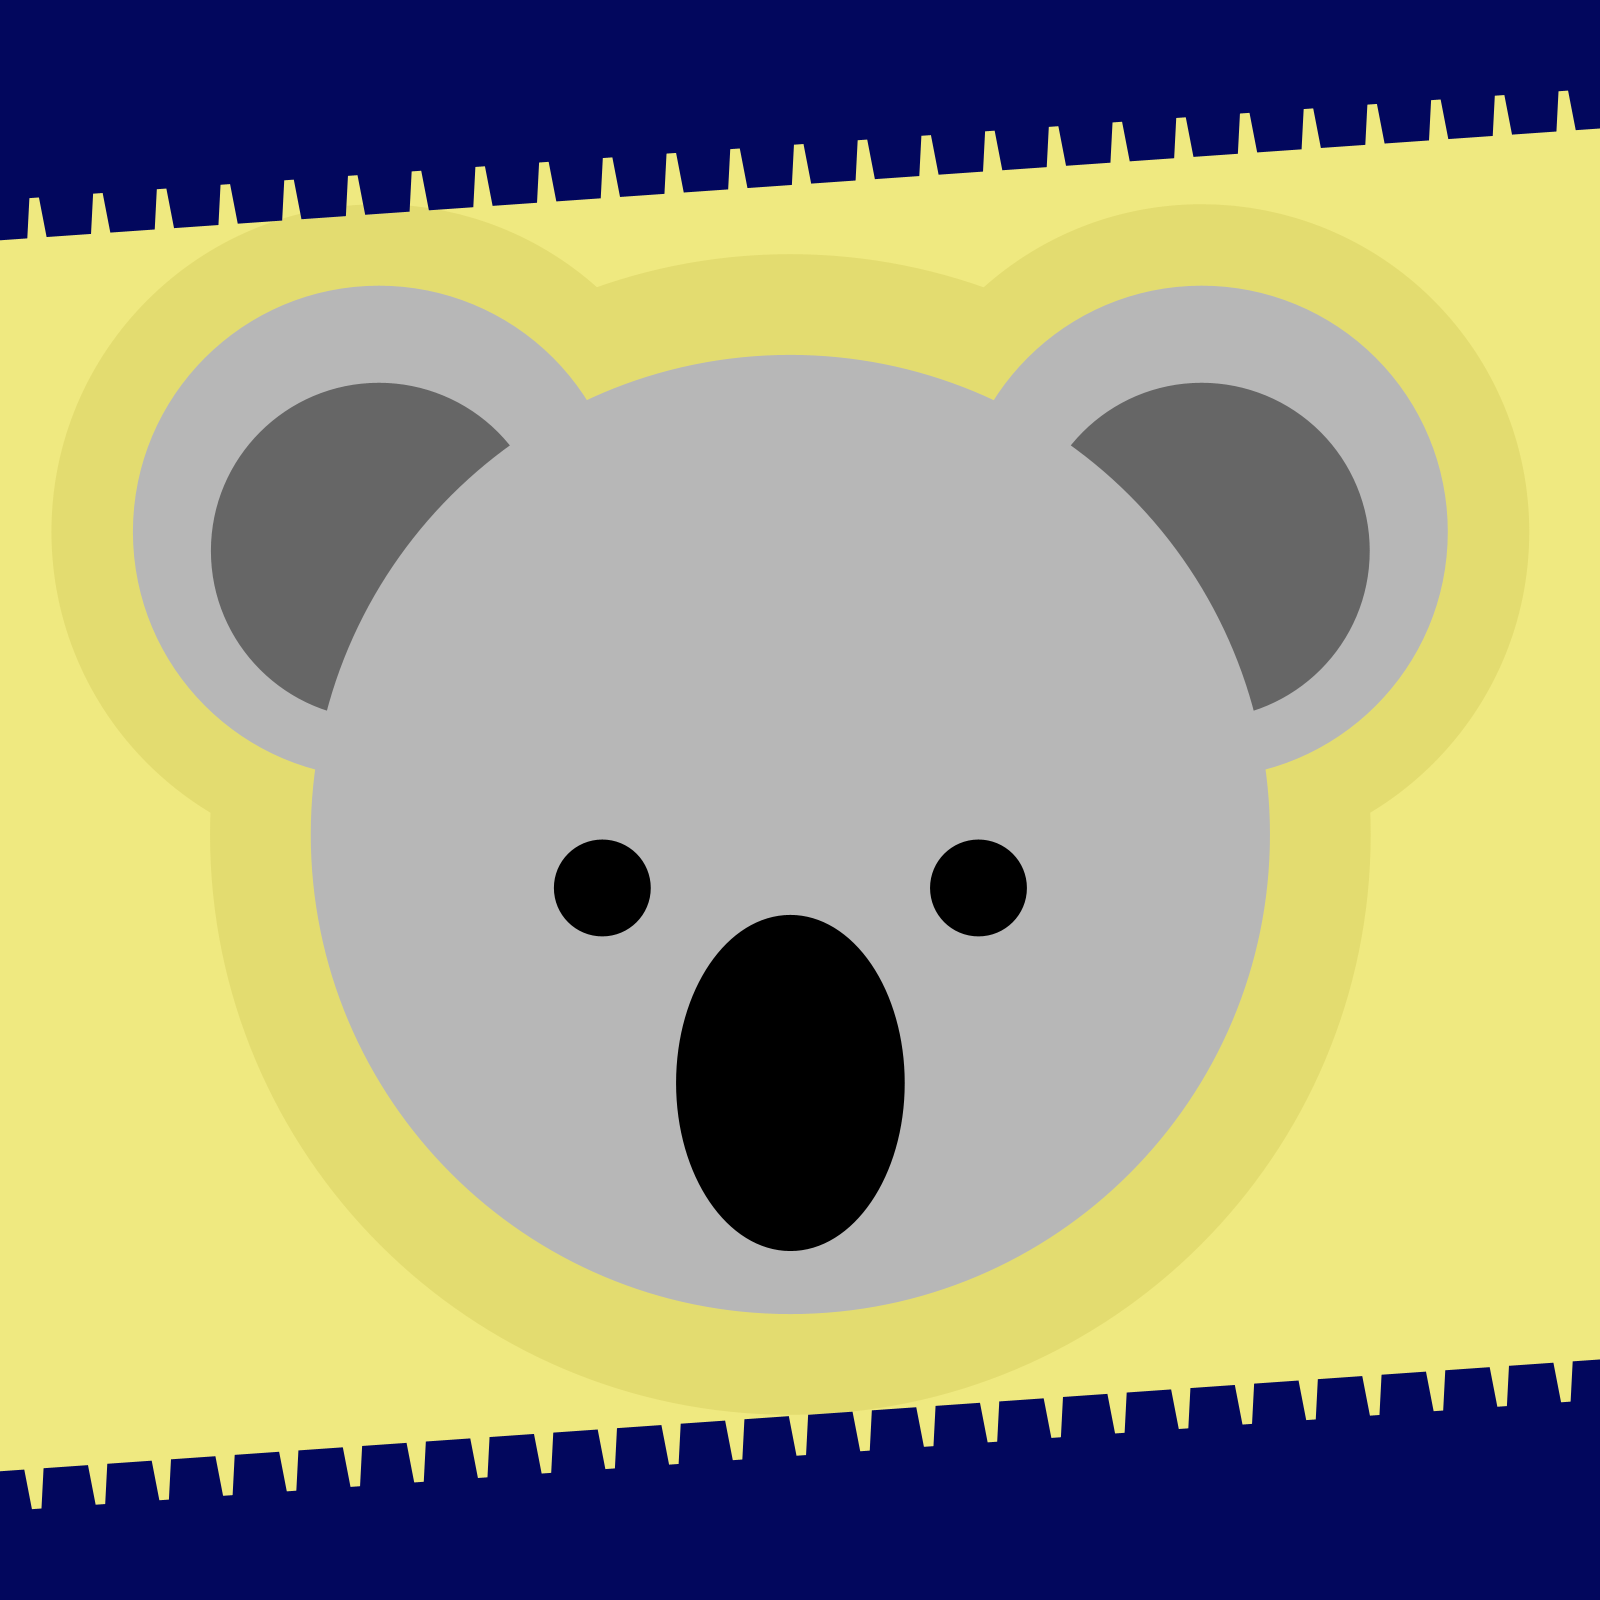 Drawing of a koala's head